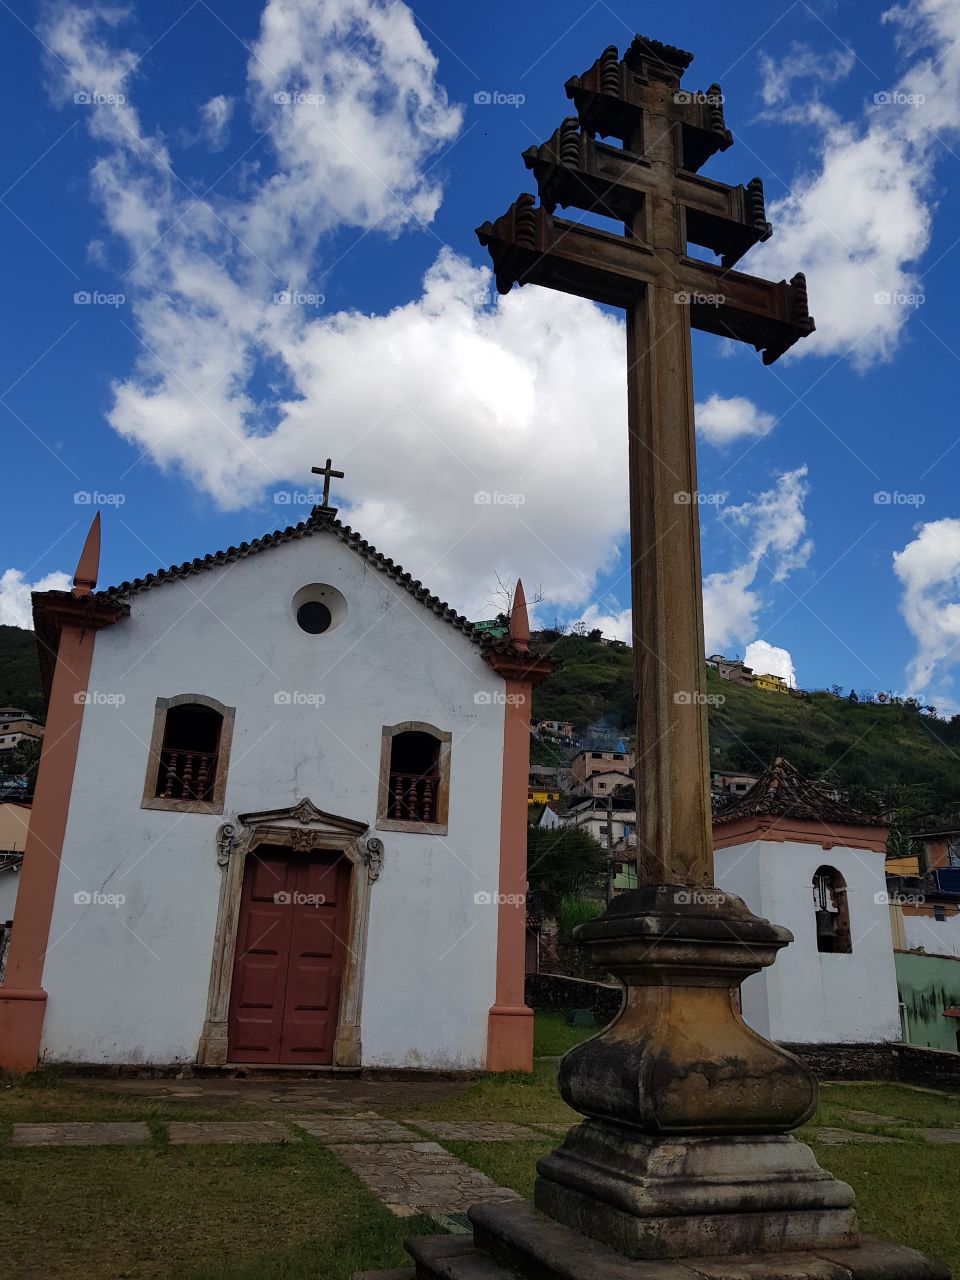 Church in Ouro Preto